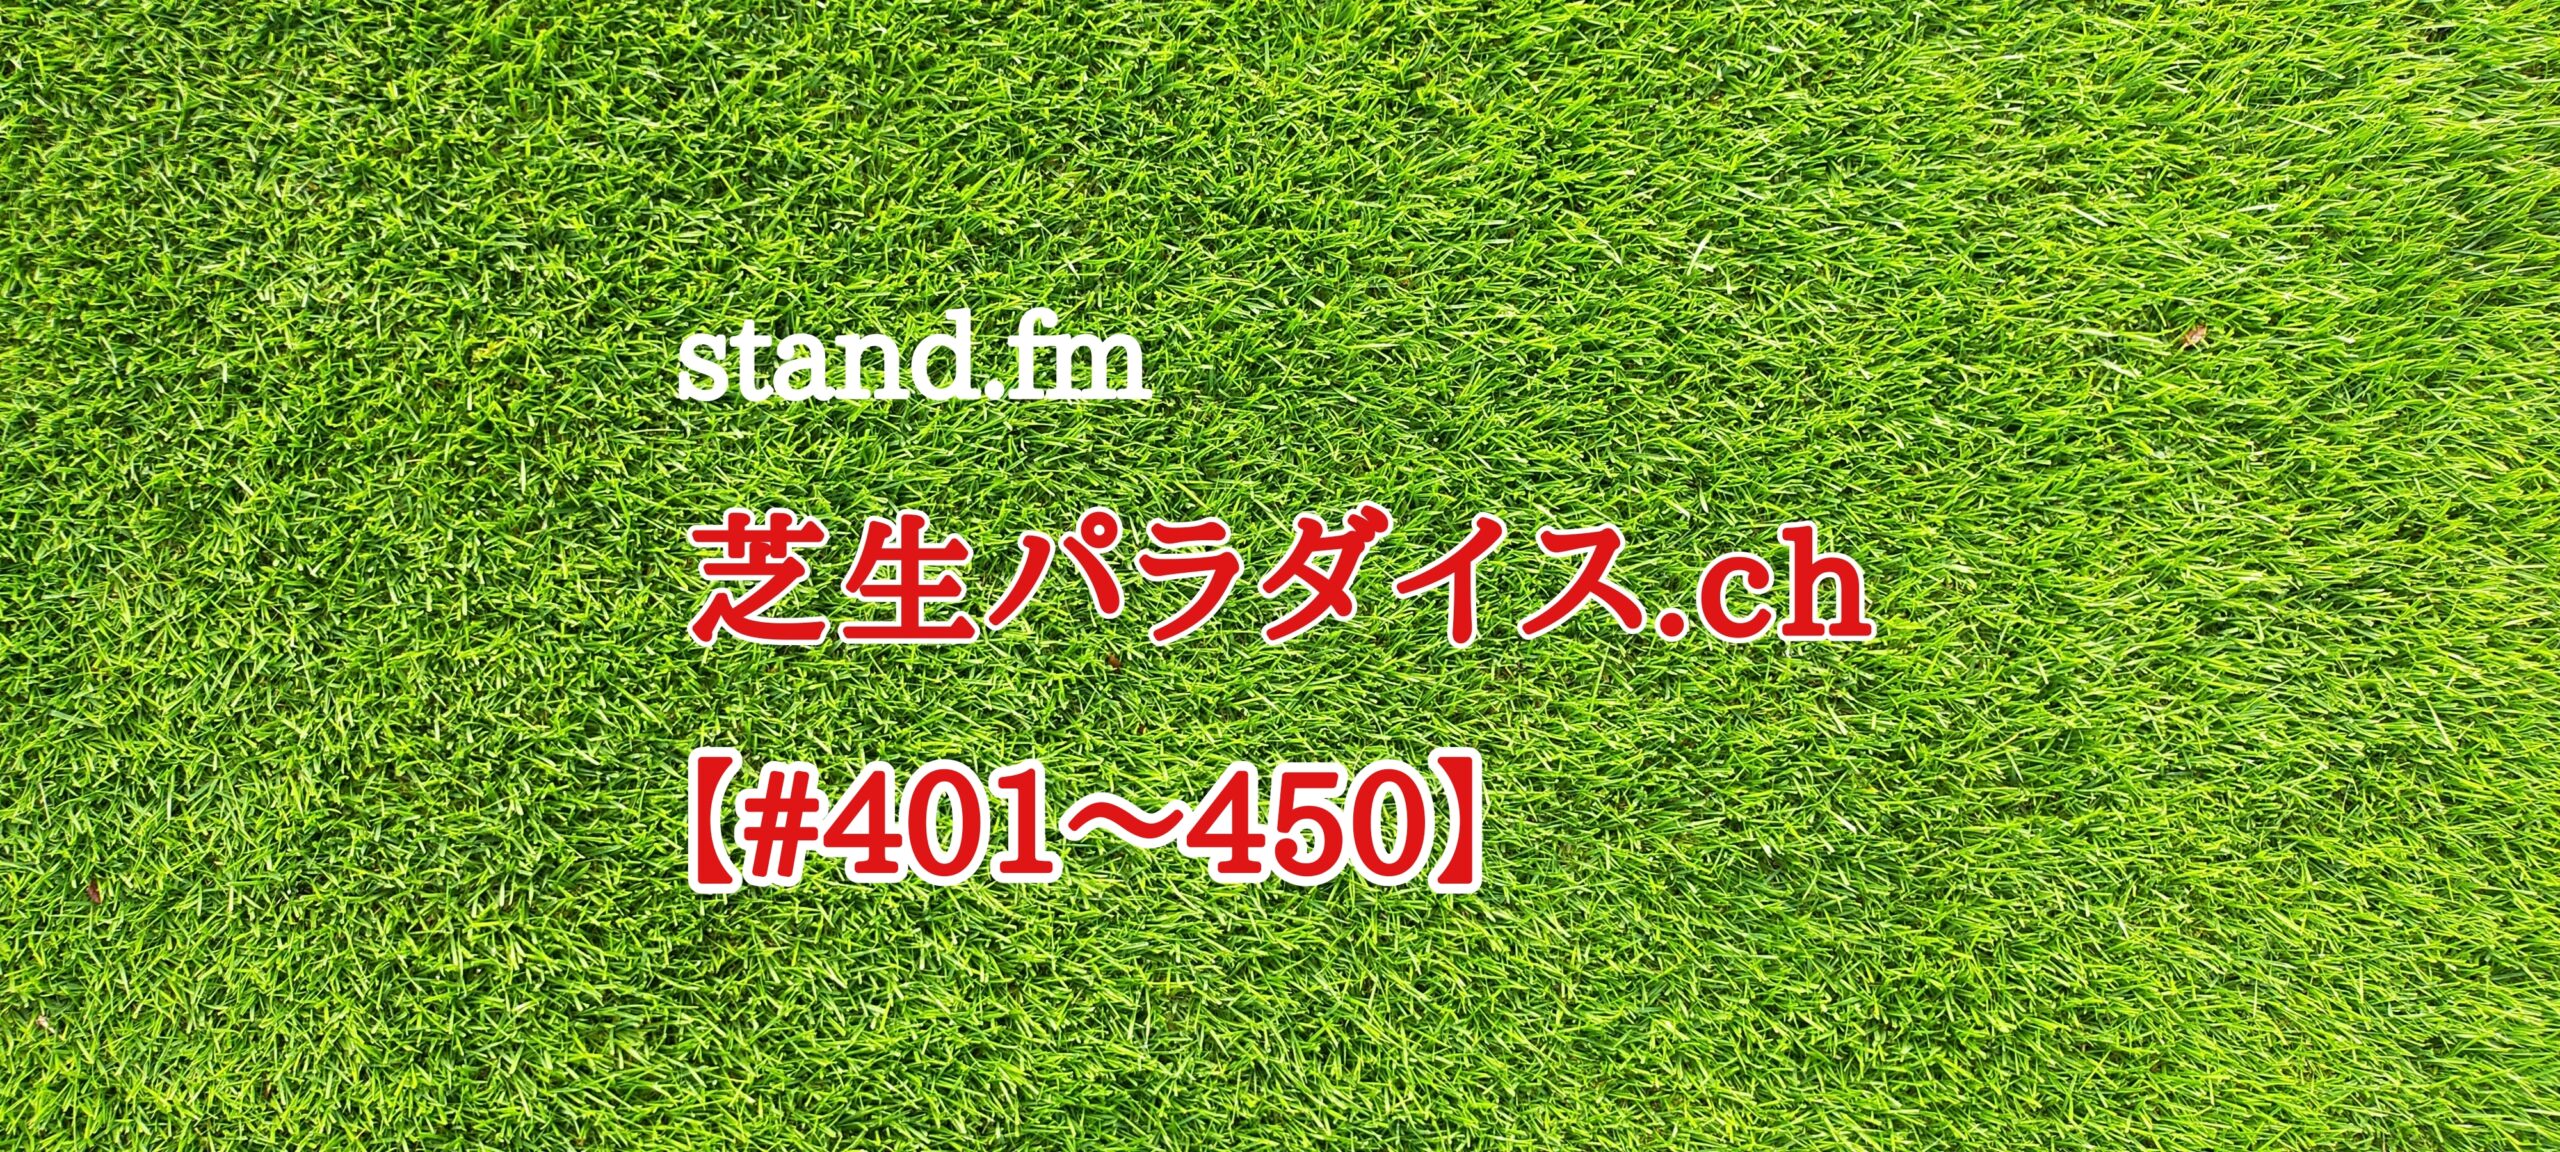 【#401〜450】stand.fm 🍀芝生パラダイス・チャンネル📻😄💕